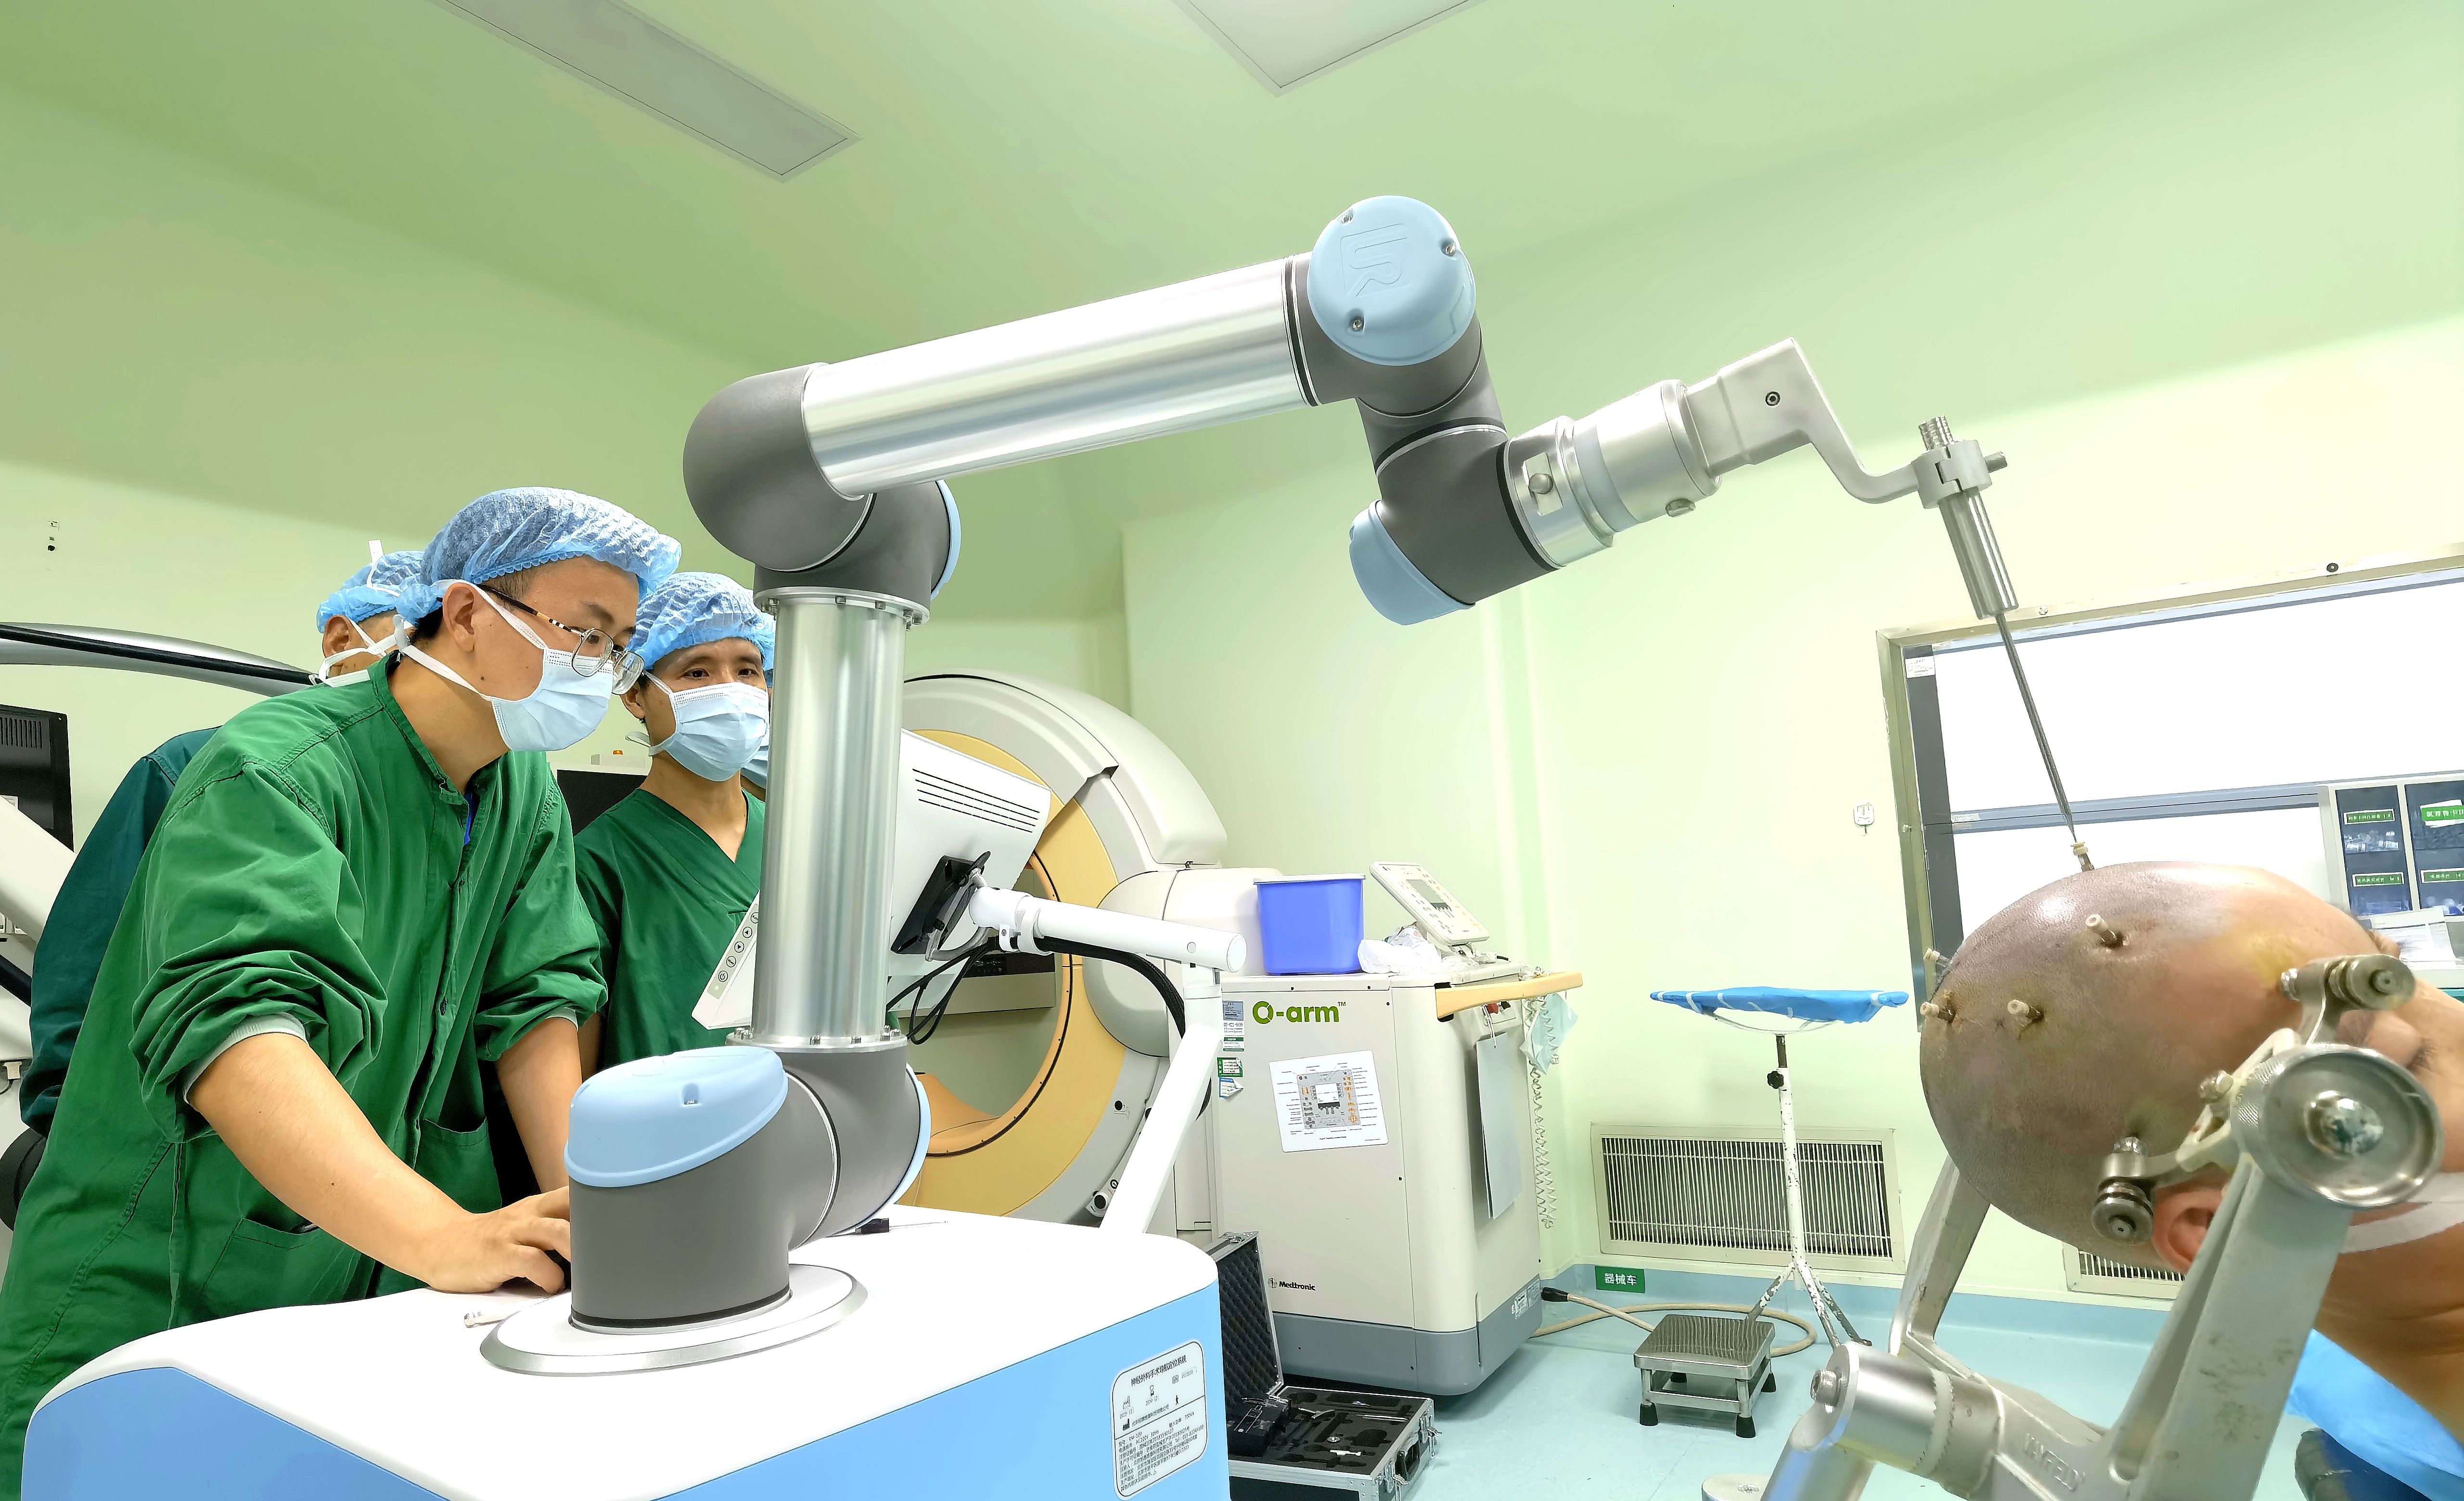 从新桥医院获悉,该院神经外科全军癫痫诊治中心在手术机器人辅助下